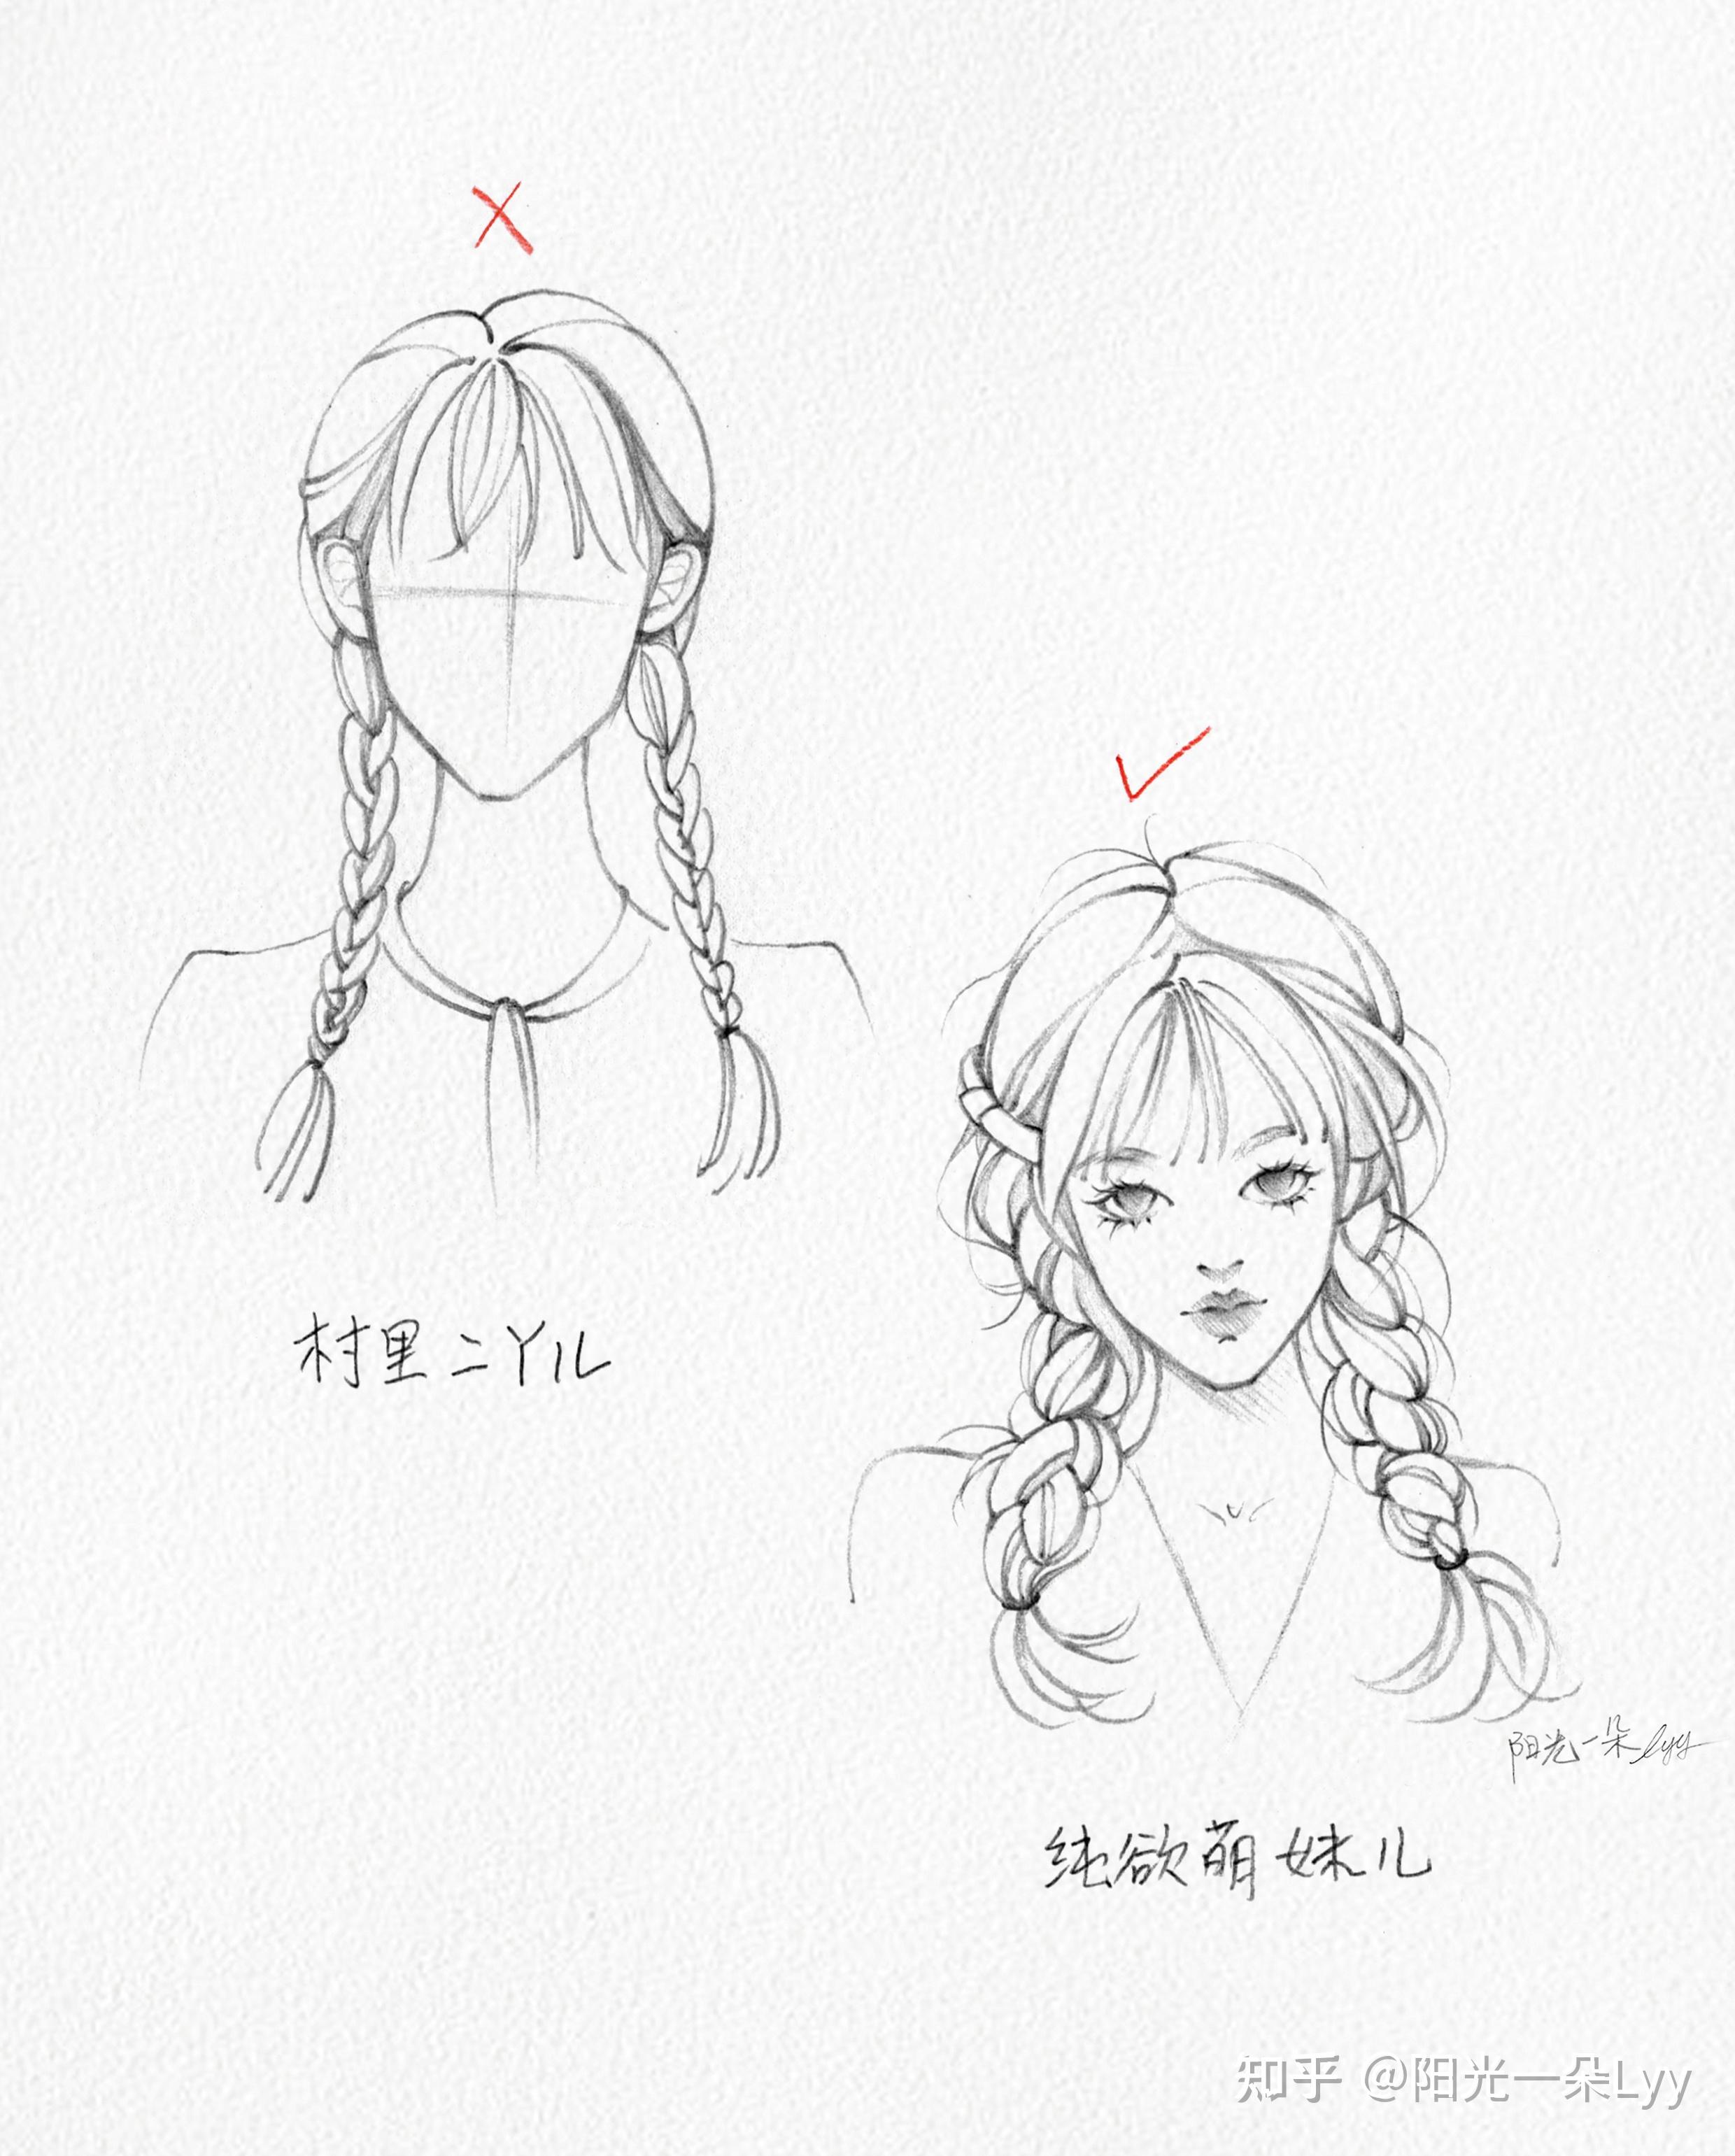 漫画角色头发的绘制技法 part 02 头发的基础绘制方法 - 知乎